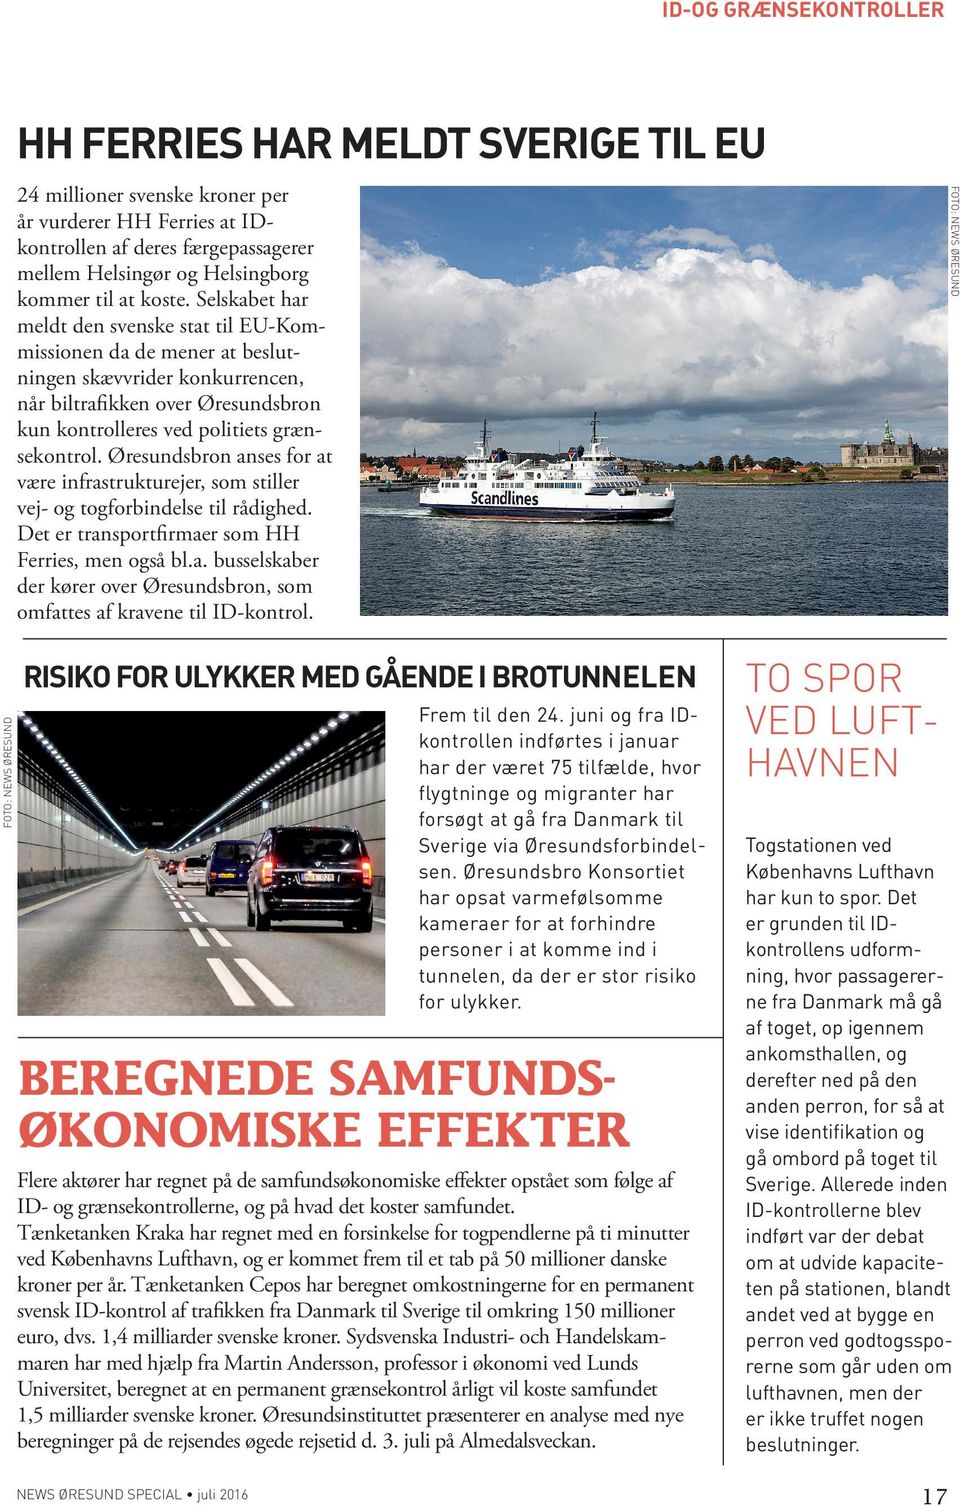 Øresundsbron anses for at være infrastrukturejer, som stiller vej- og togforbindelse til rådighed. Det er transportfirmaer som HH Ferries, men også bl.a. busselskaber der kører over Øresundsbron, som omfattes af kravene til ID-kontrol.